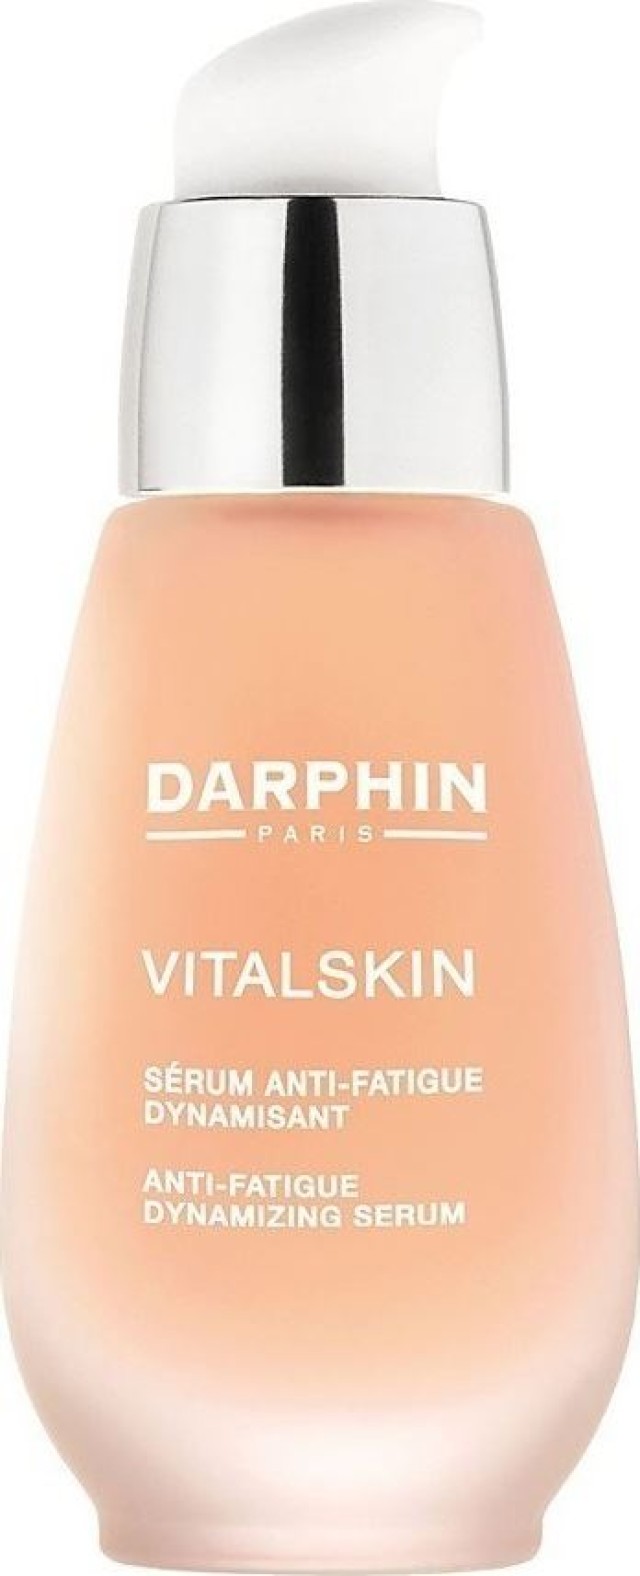 DARPHIN VITALSKIN Antifatigue Dynamic Serum 30ml